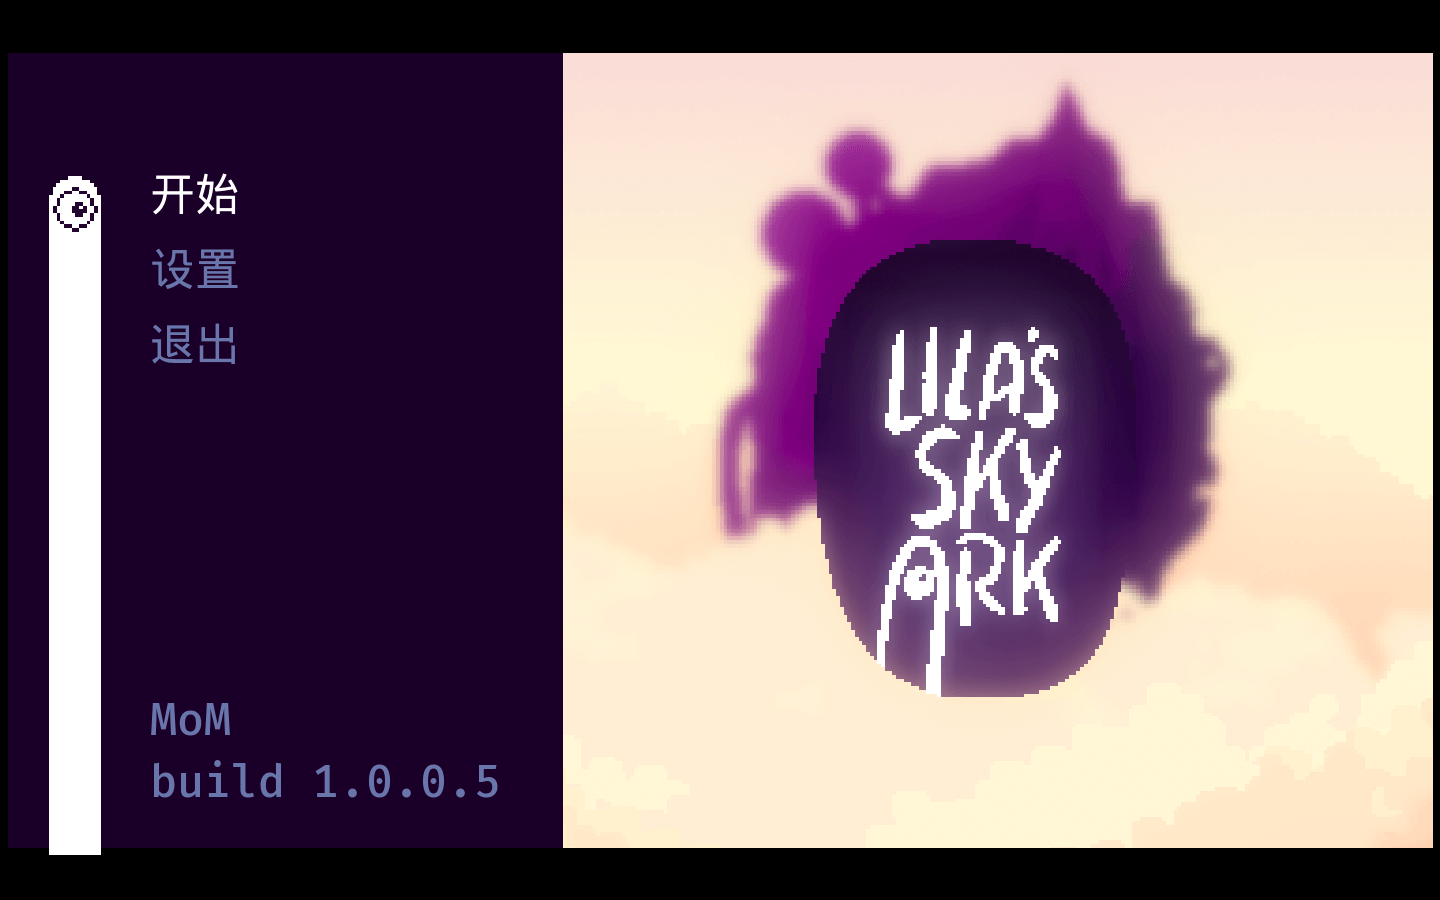 莱拉的天际方舟 Lila’s Sky Ark for Mac v1.0.4.1 中文原生版-1